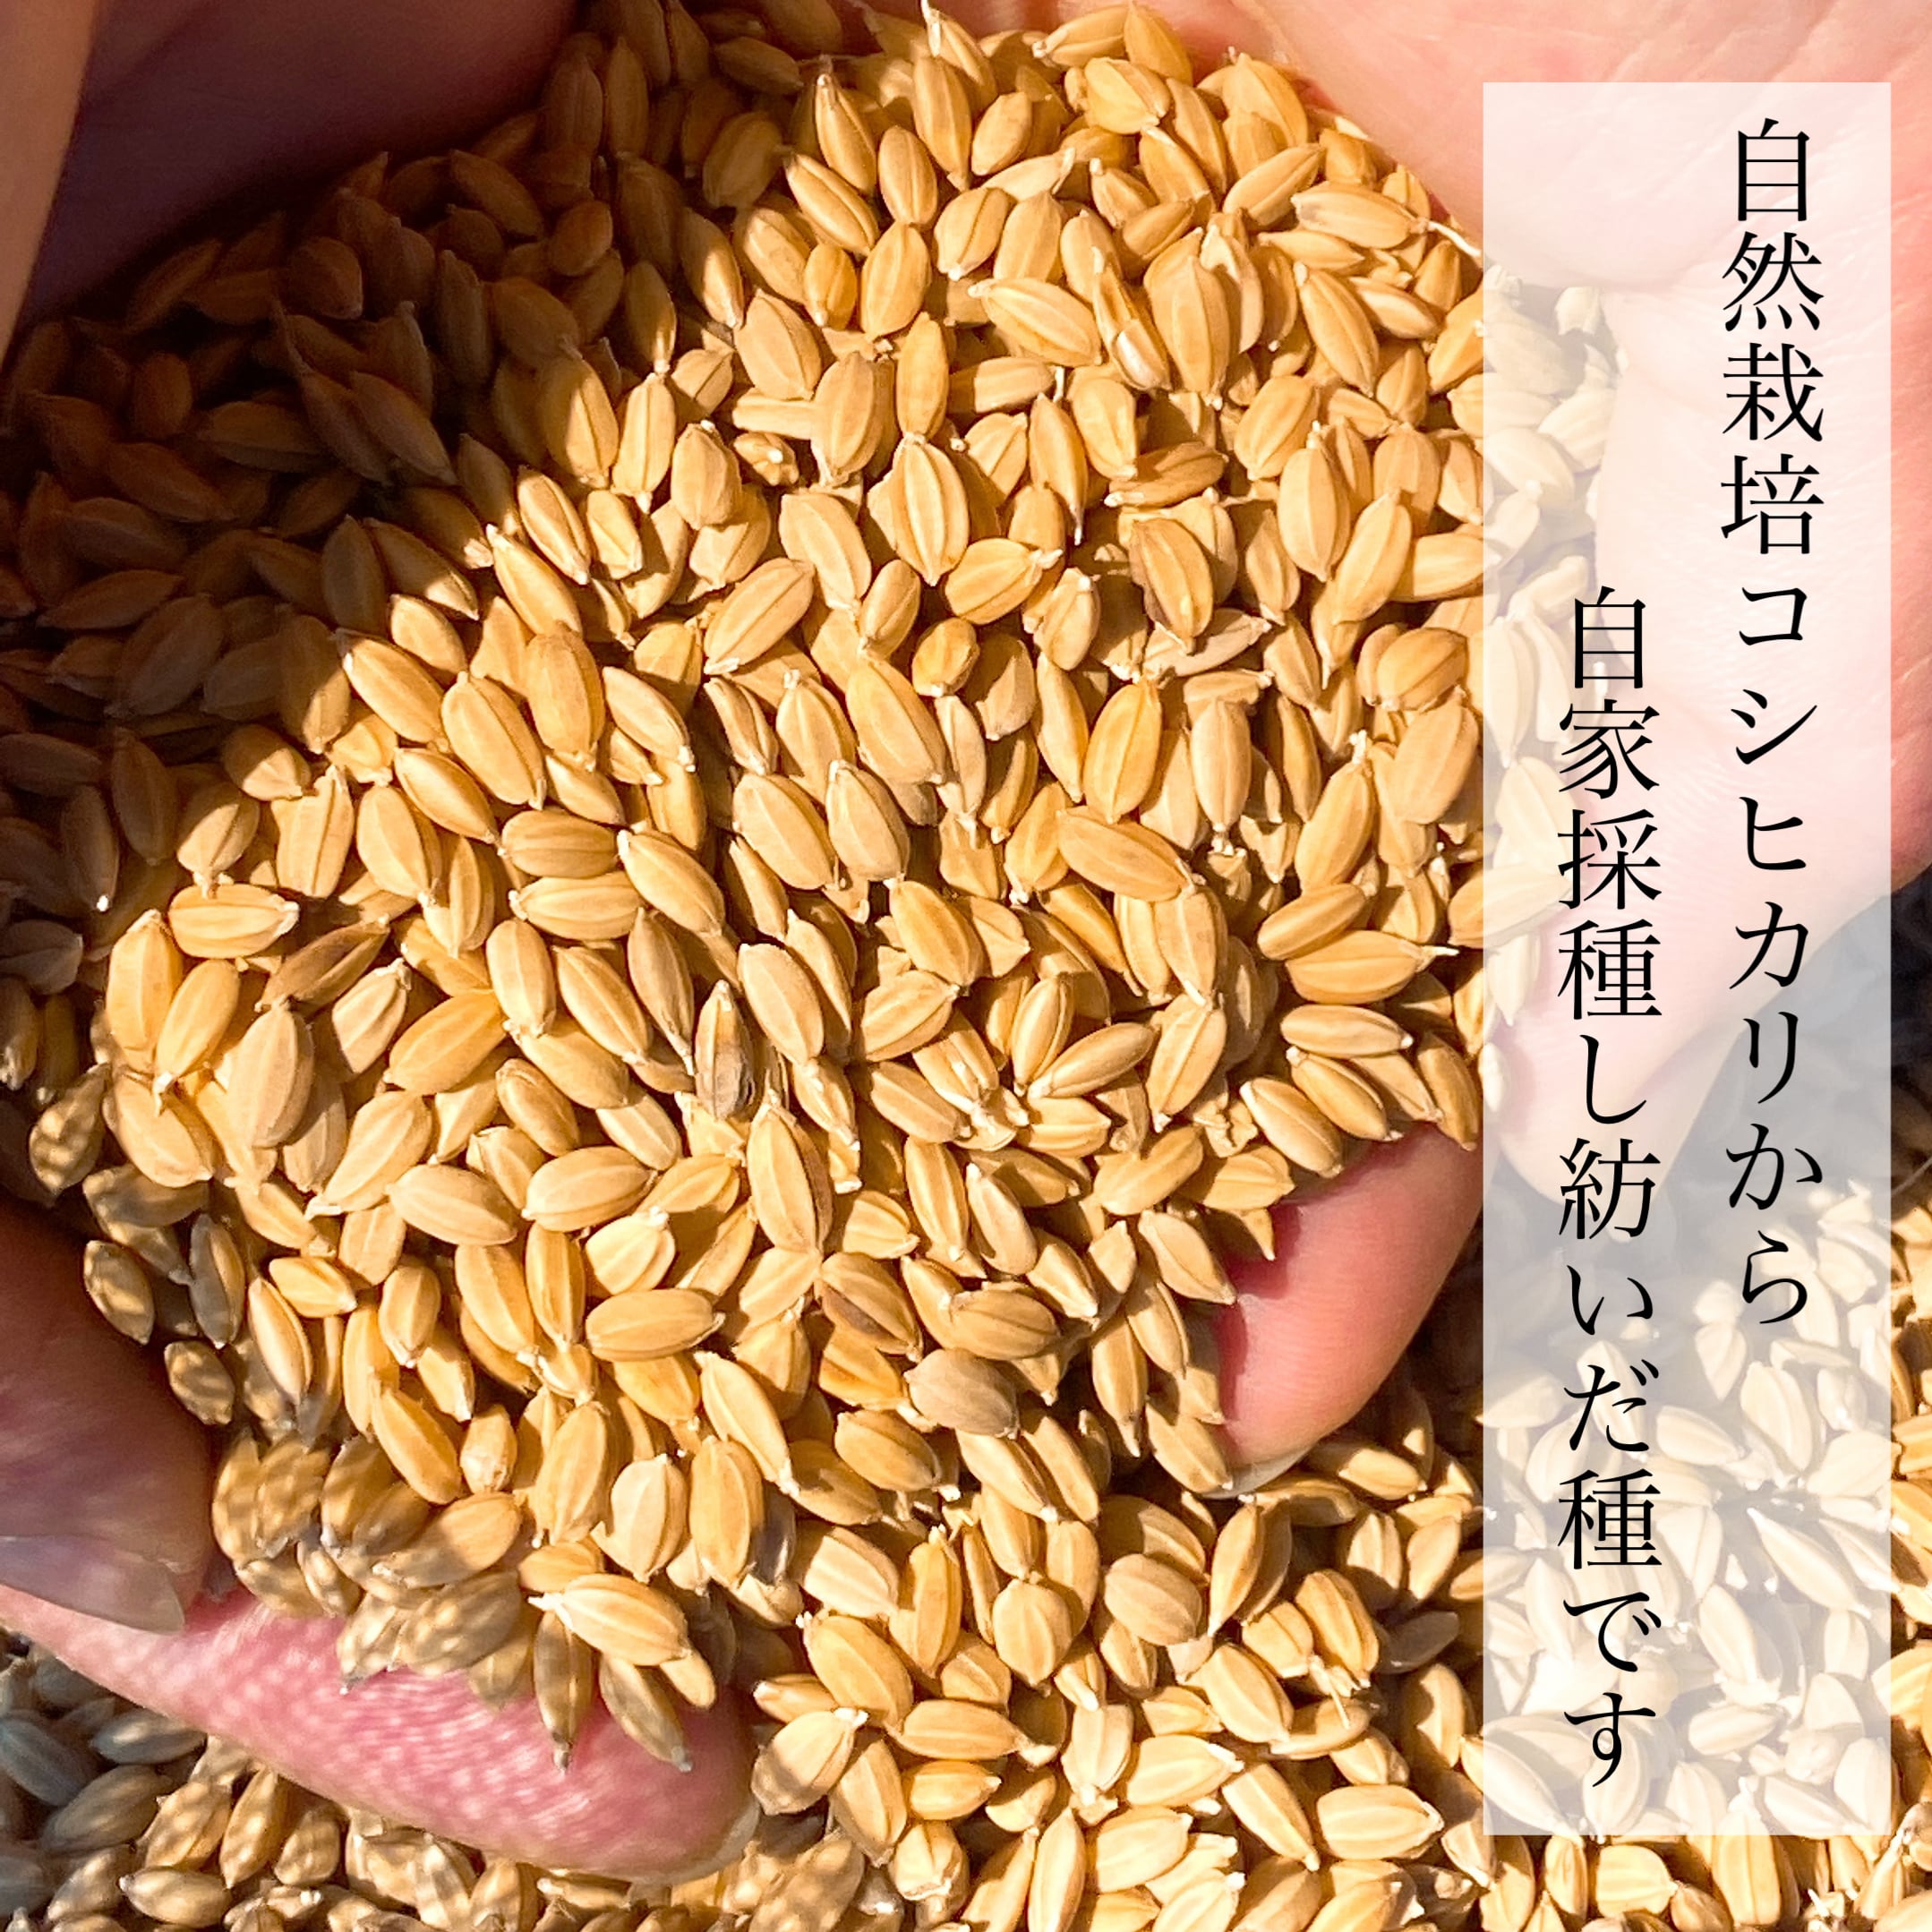 令和3年新米 自然栽培米 玄米20kg 農薬肥料不使用 コシヒカリ米/穀物